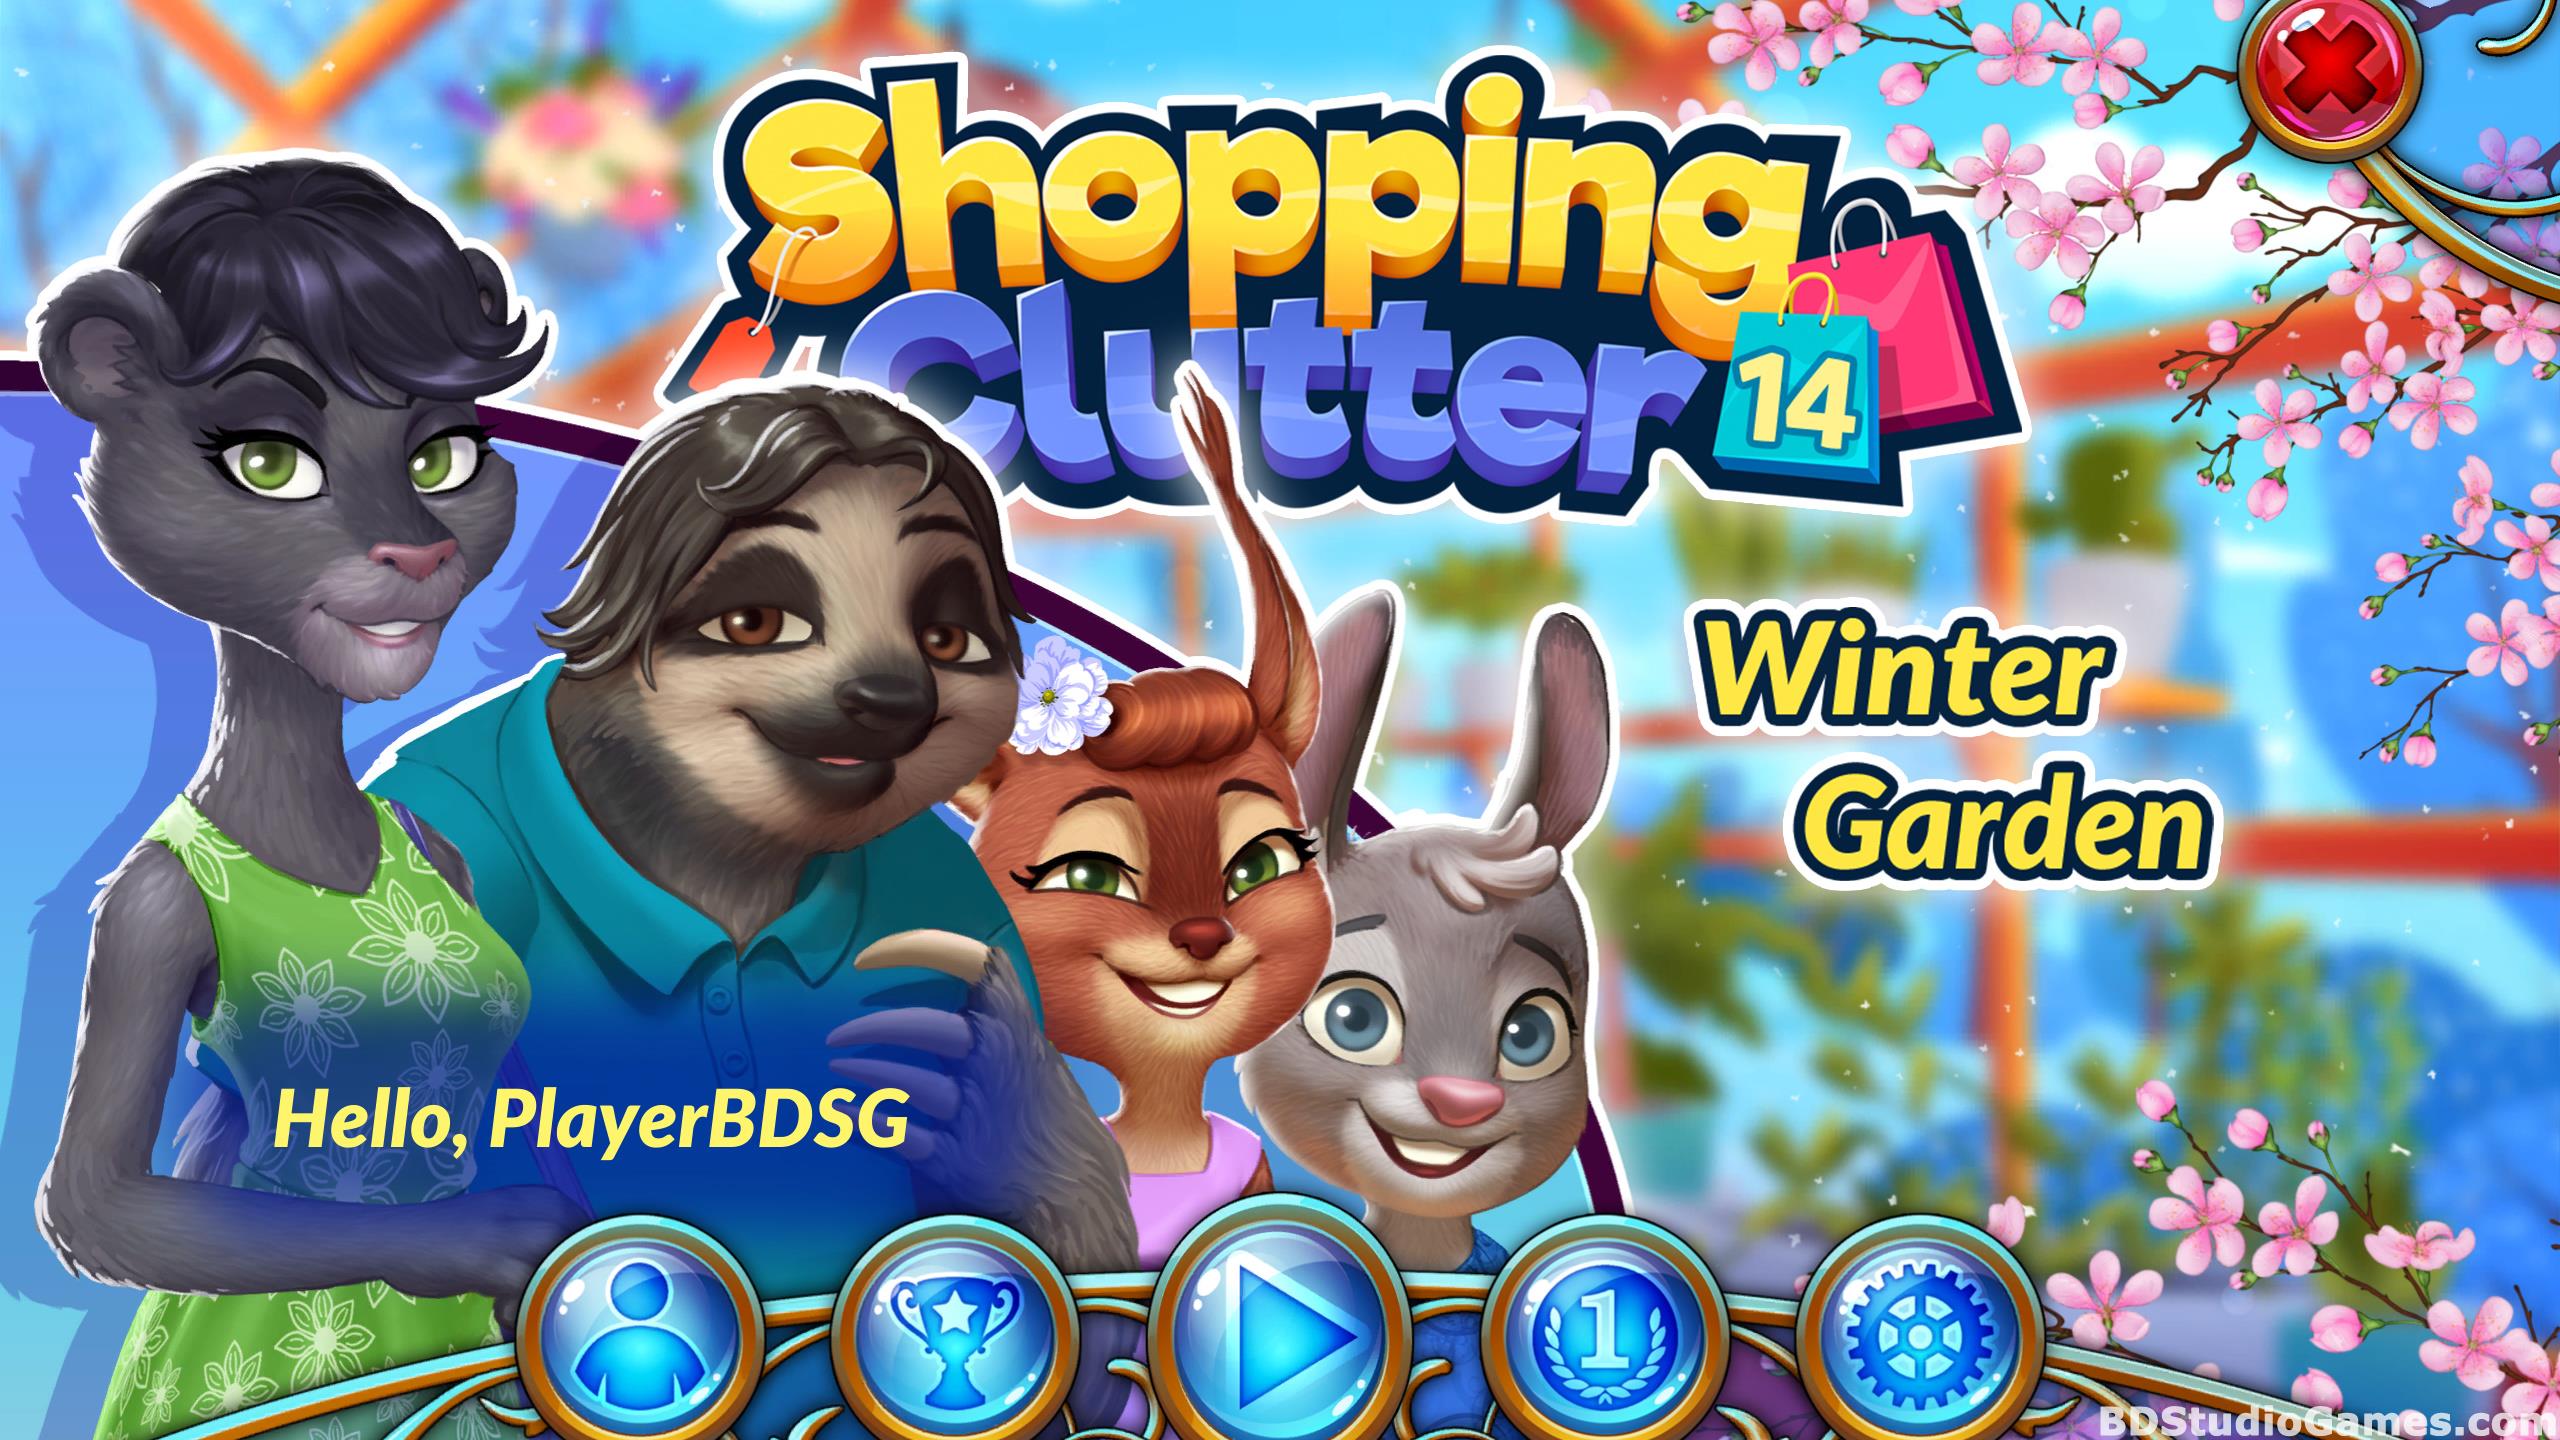 Shopping Clutter 14: Winter Garden Free Download Screenshots 05